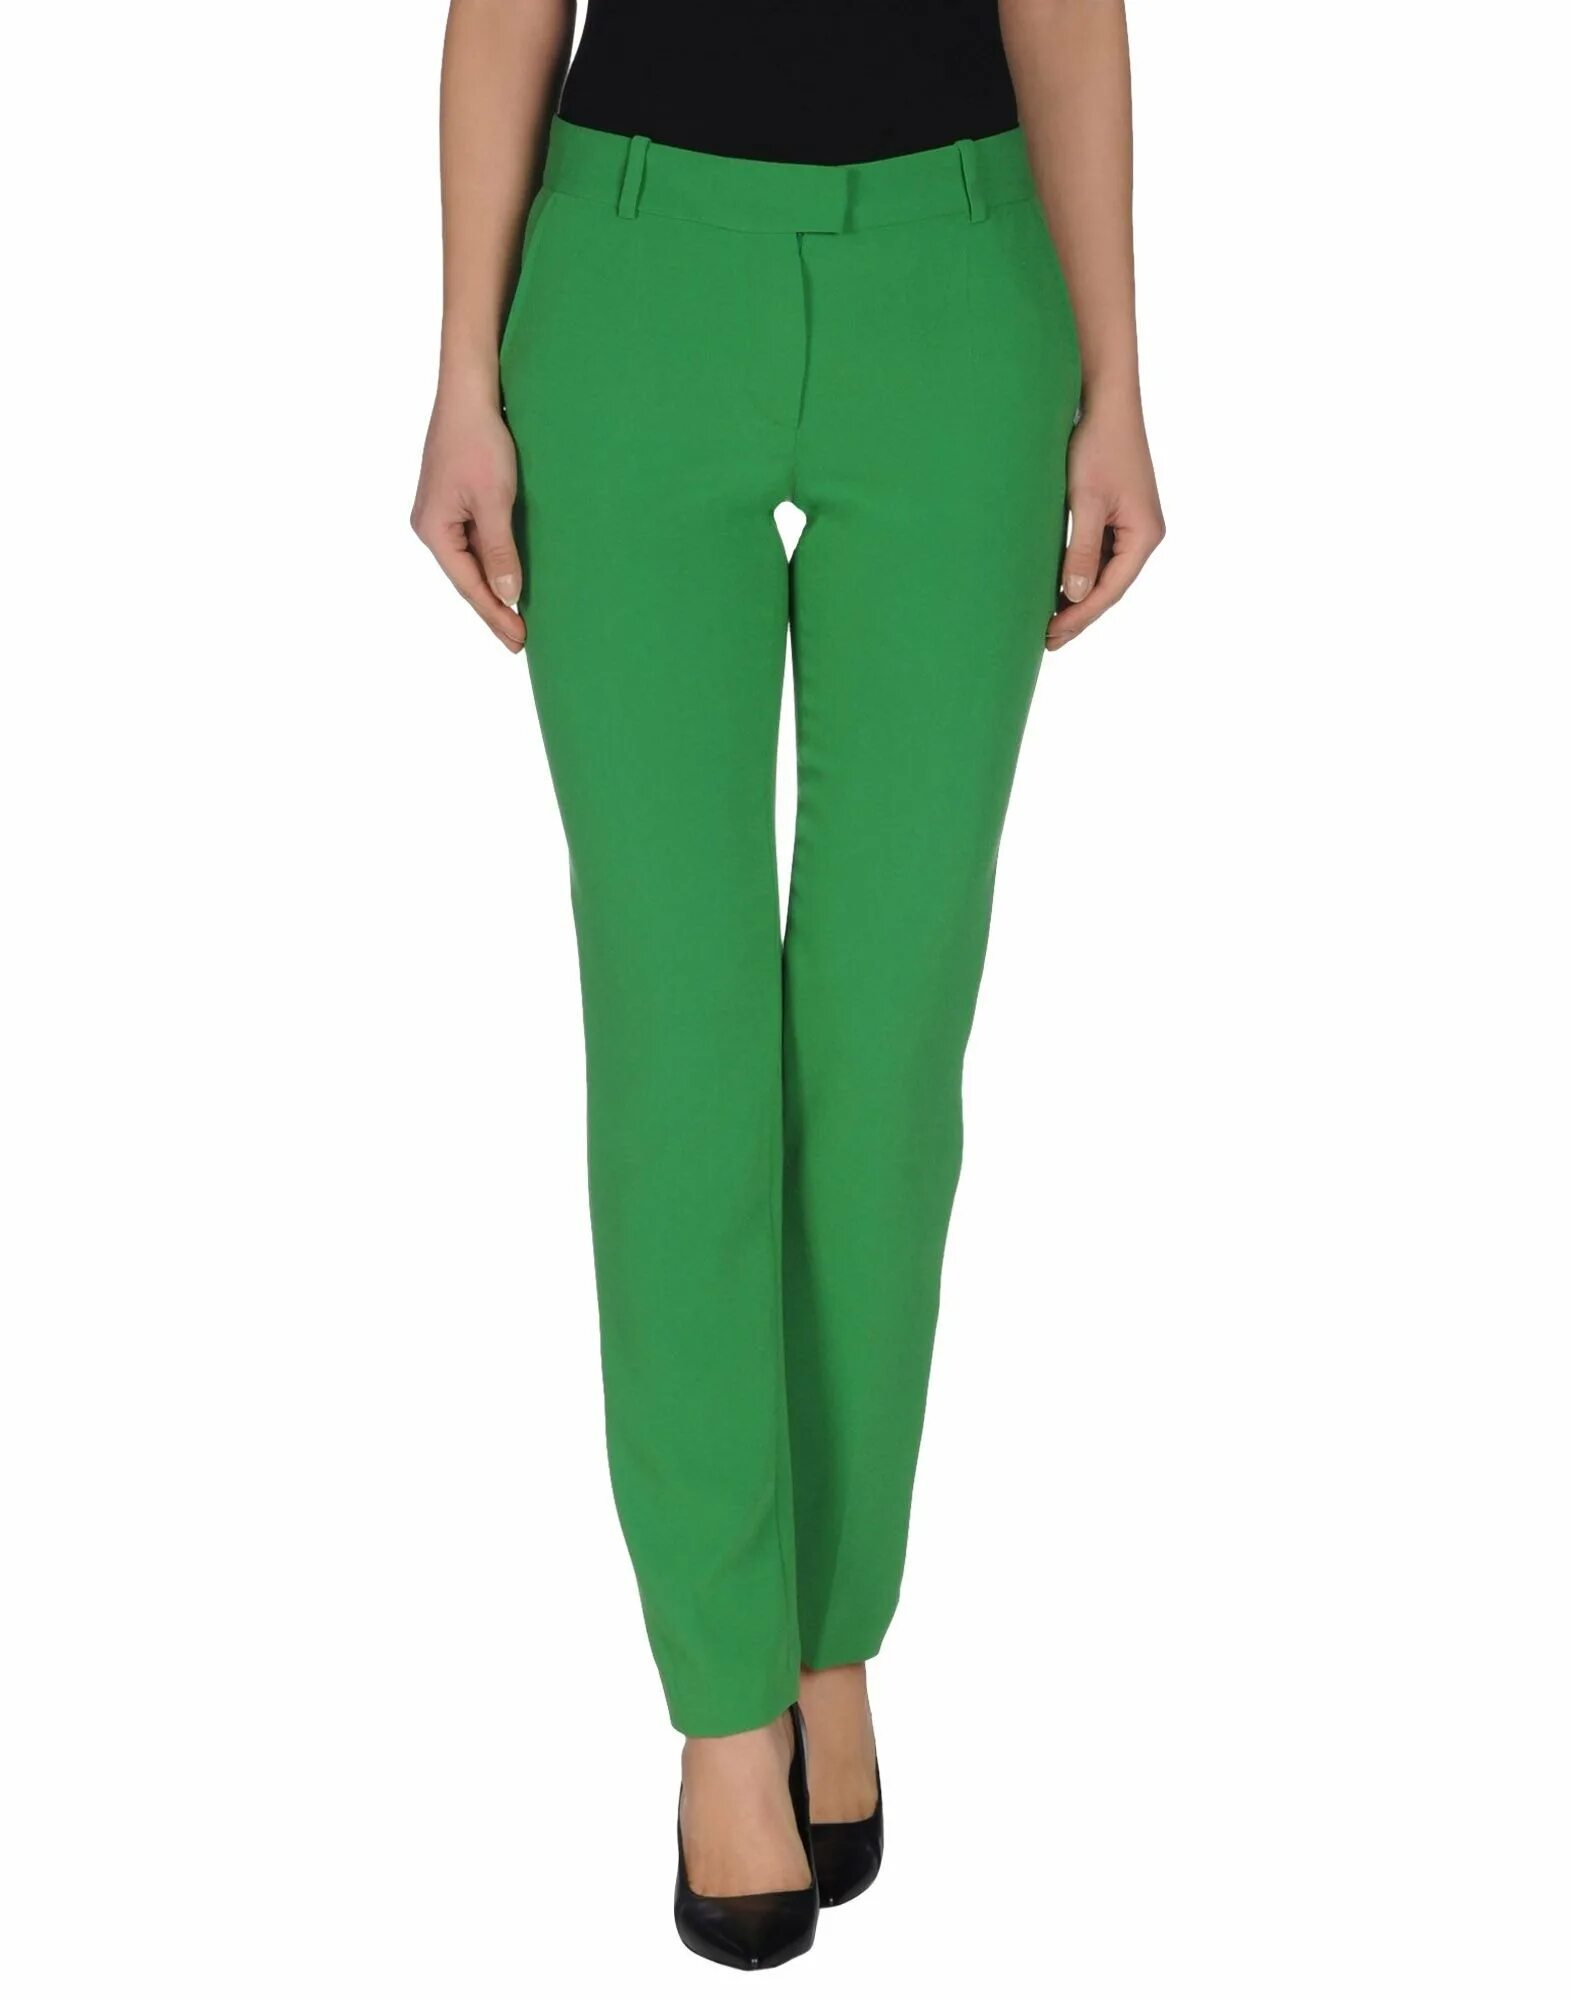 Купить зеленые штаны. Зеленые брюки Marcel Battiston AWG. Зеленые кожаные брюки. Кожаные брюки зеленые женские. Темно зелёные брюки широкие.